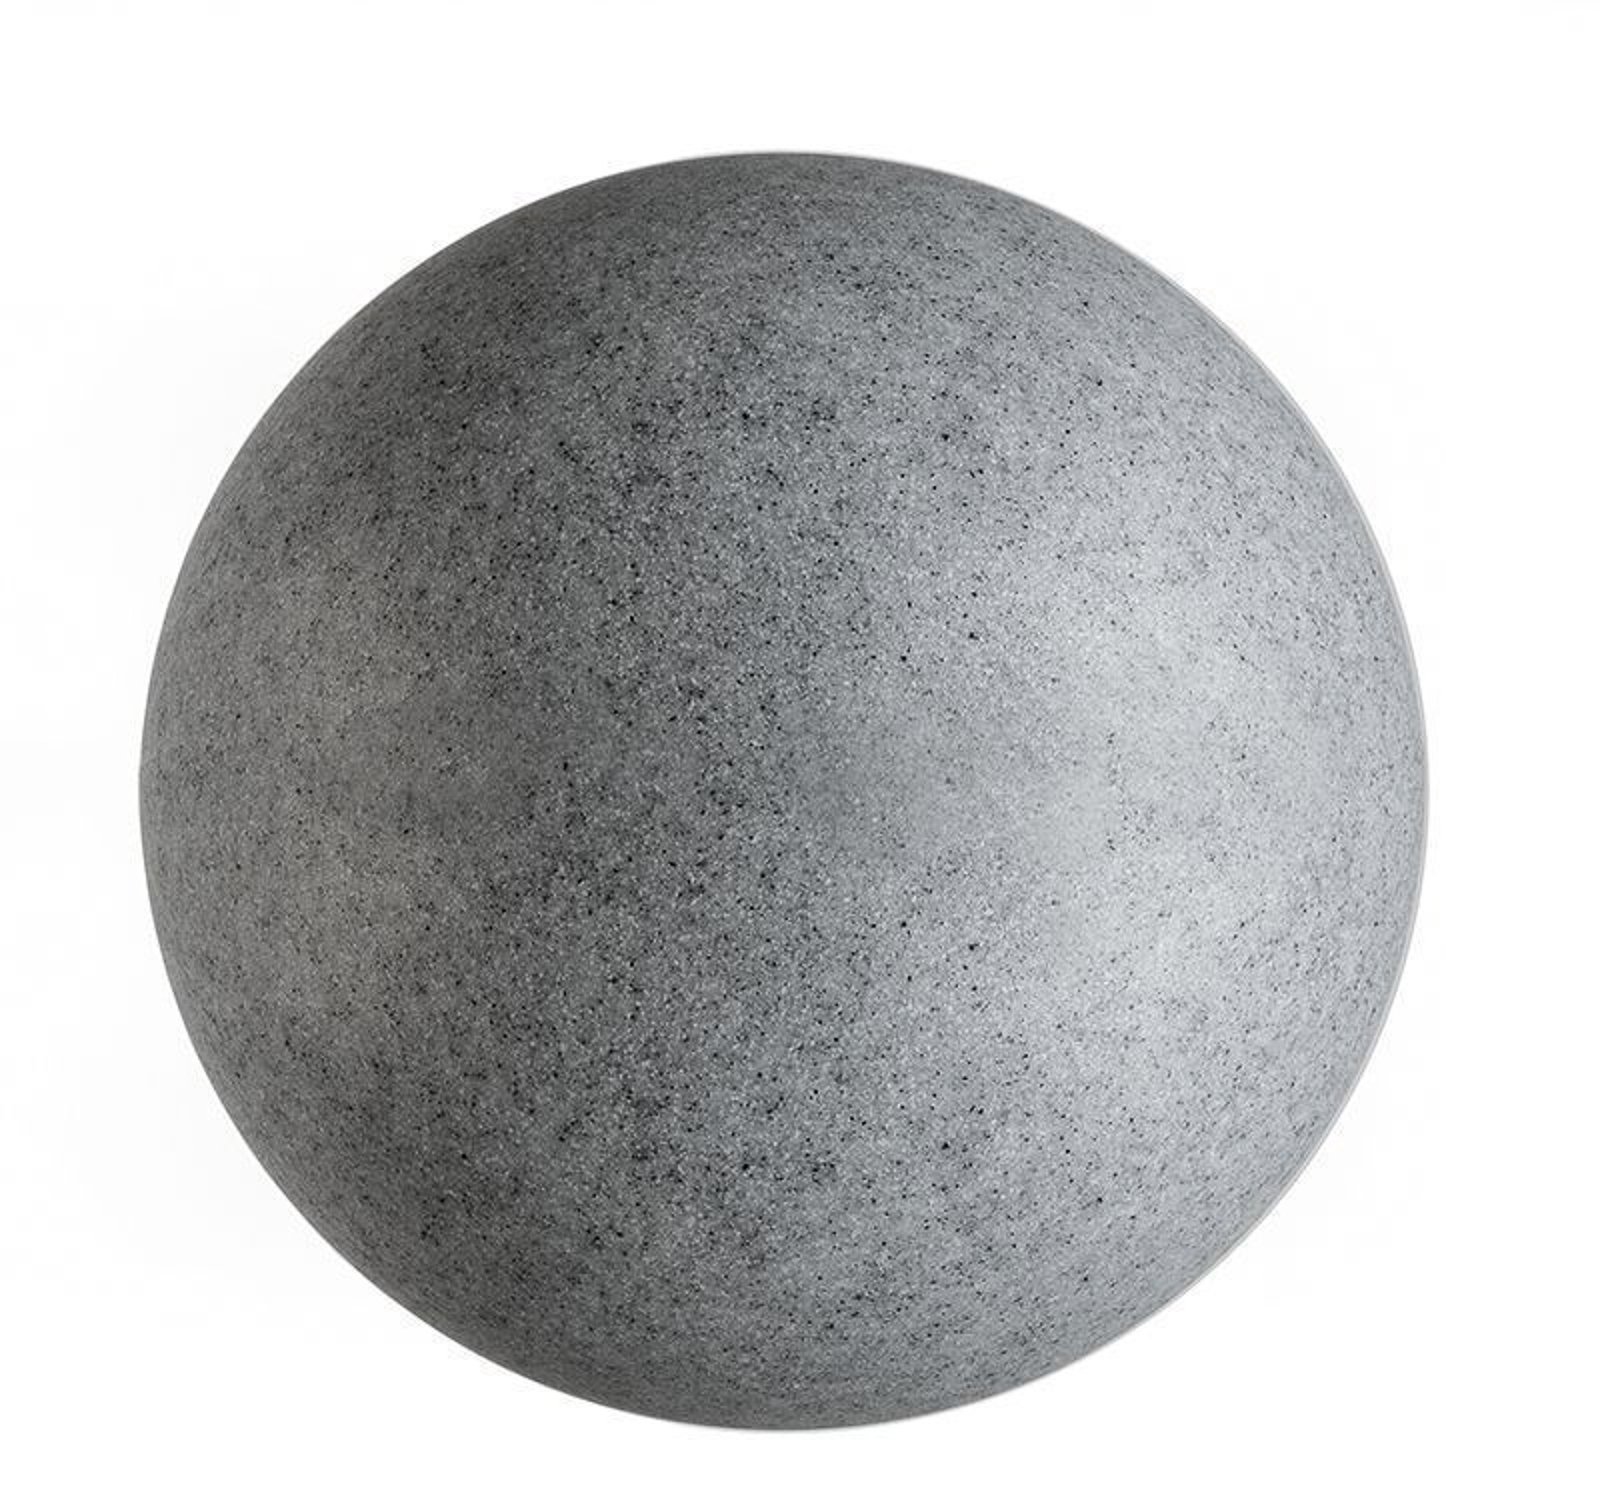 Lampada a globo per esterni con picchetto a terra, granito, Ø 45 cm